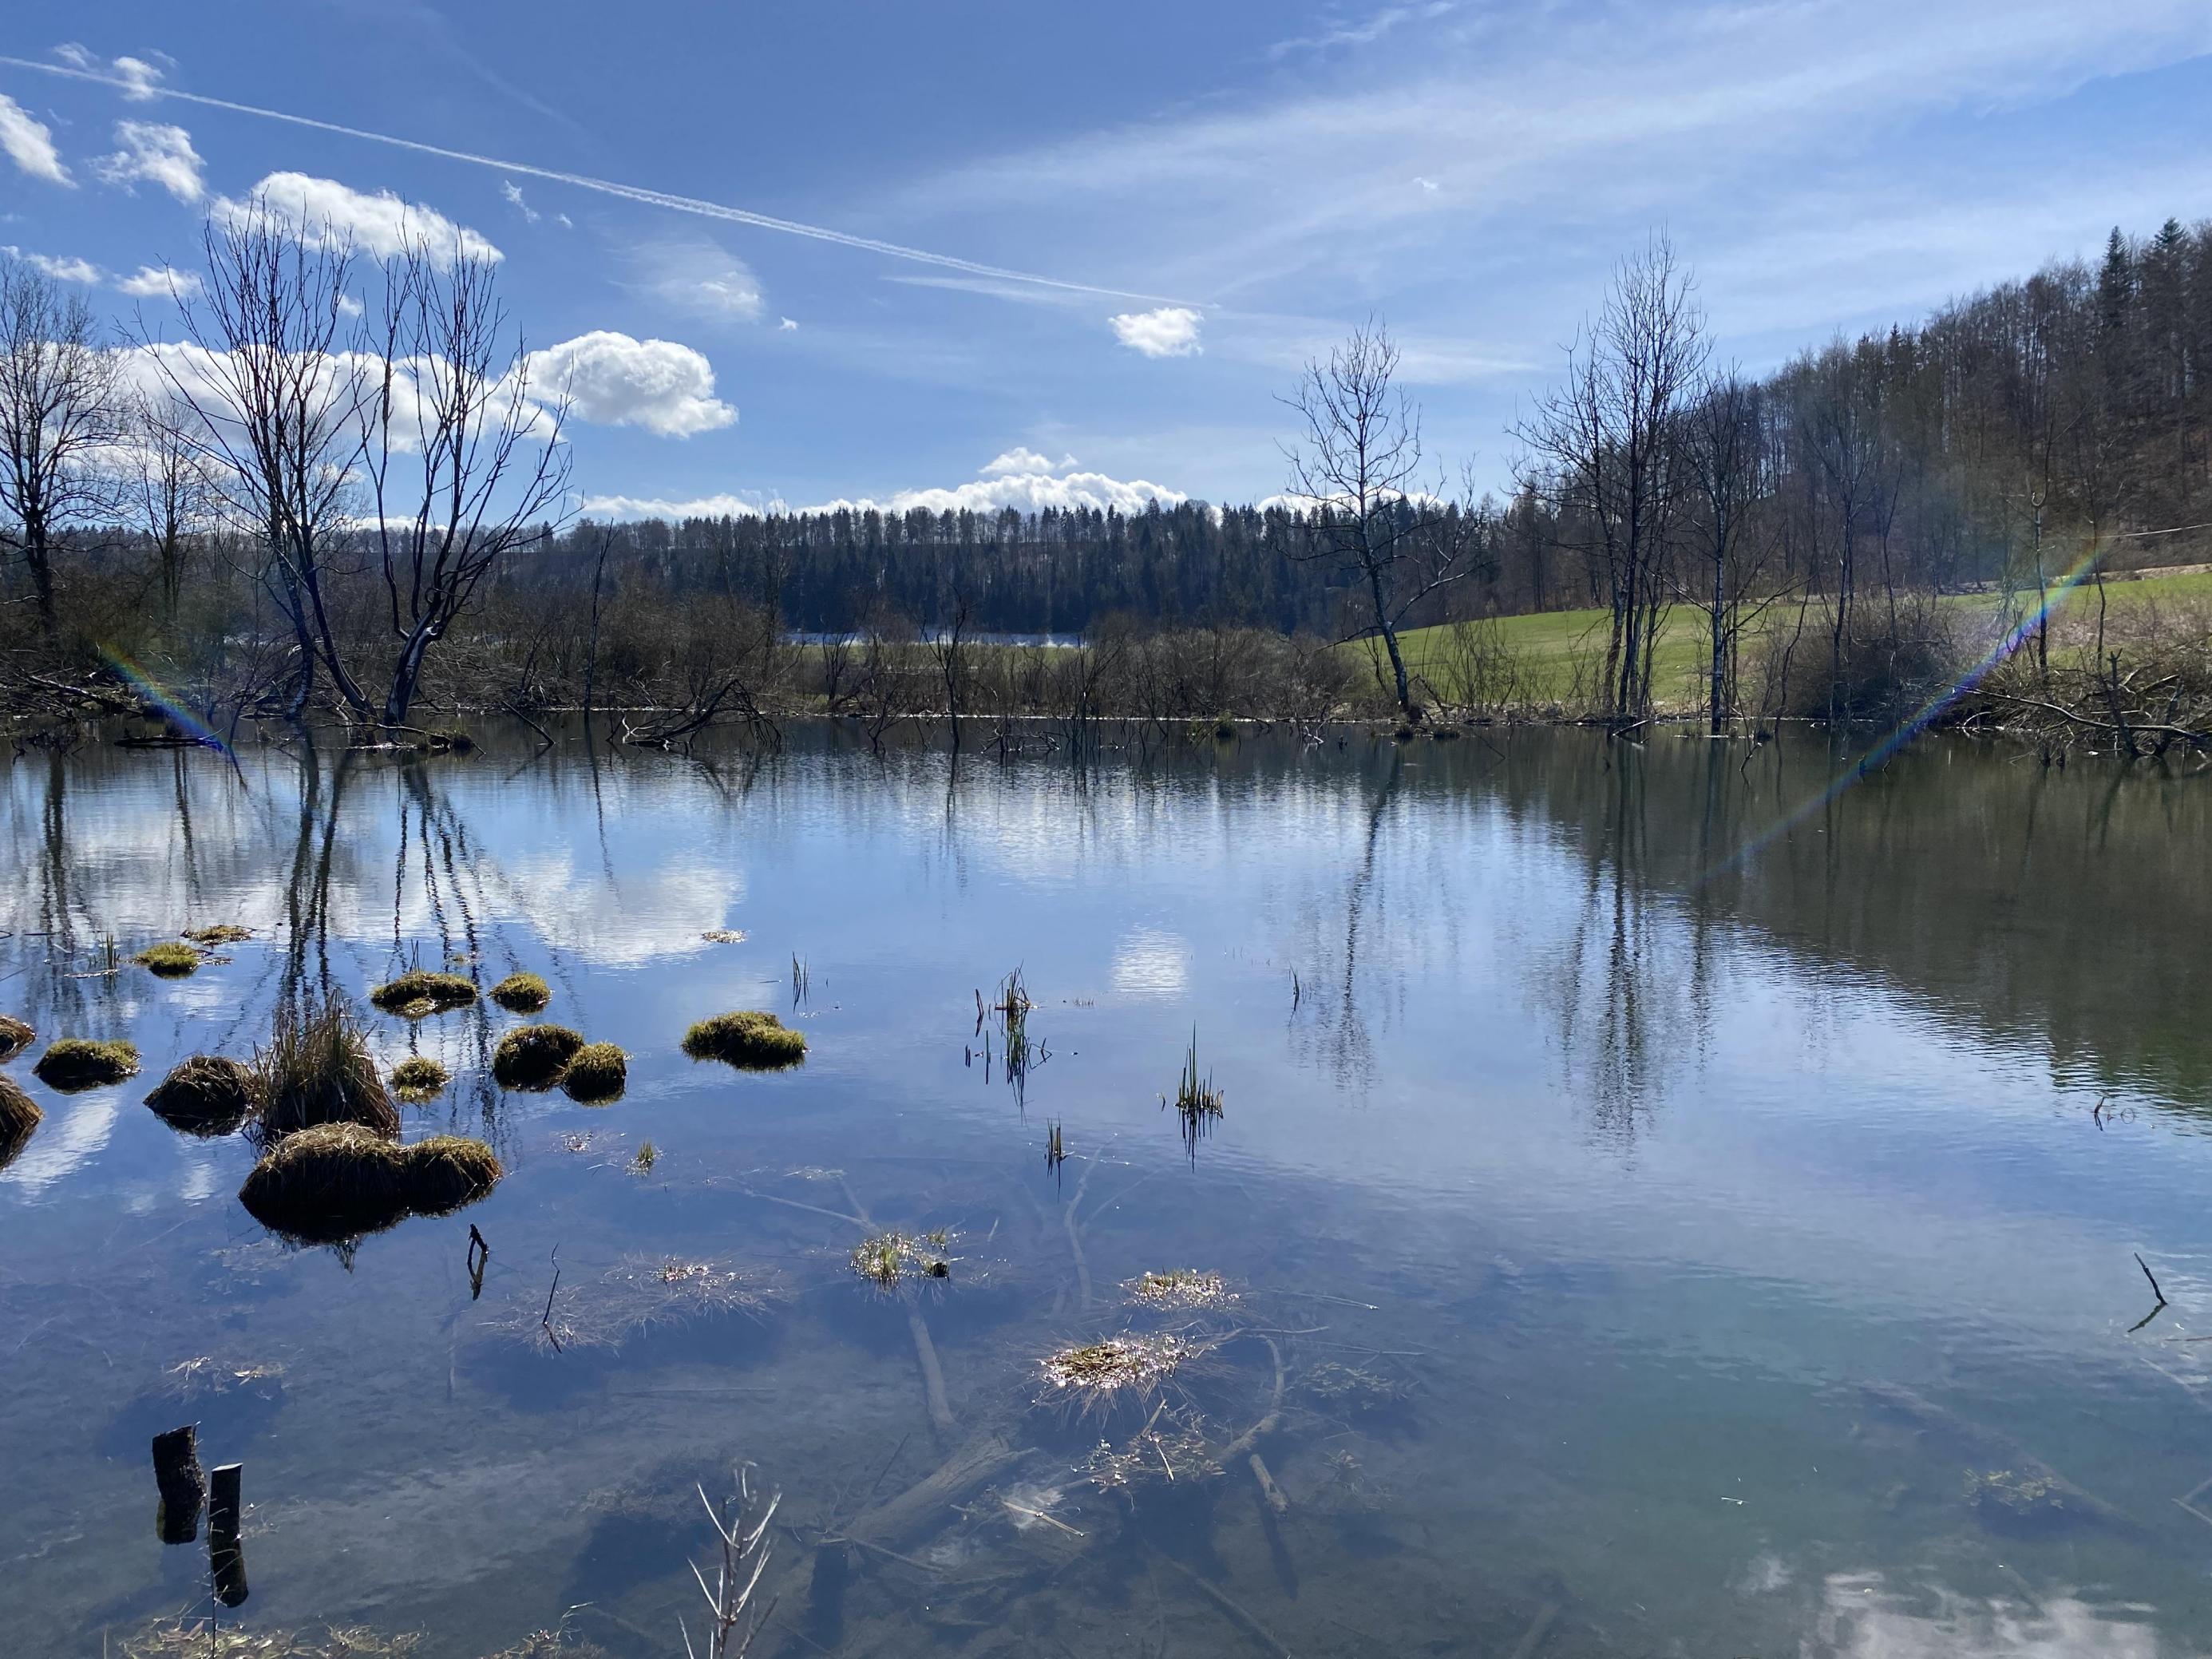 Im Naturschutzgebiet Geifitze auf der Schwäbischen Alb haben Biber einen großen See angelegt. Der Himmel spiegelt sich in einer glatten Wasserfläche.